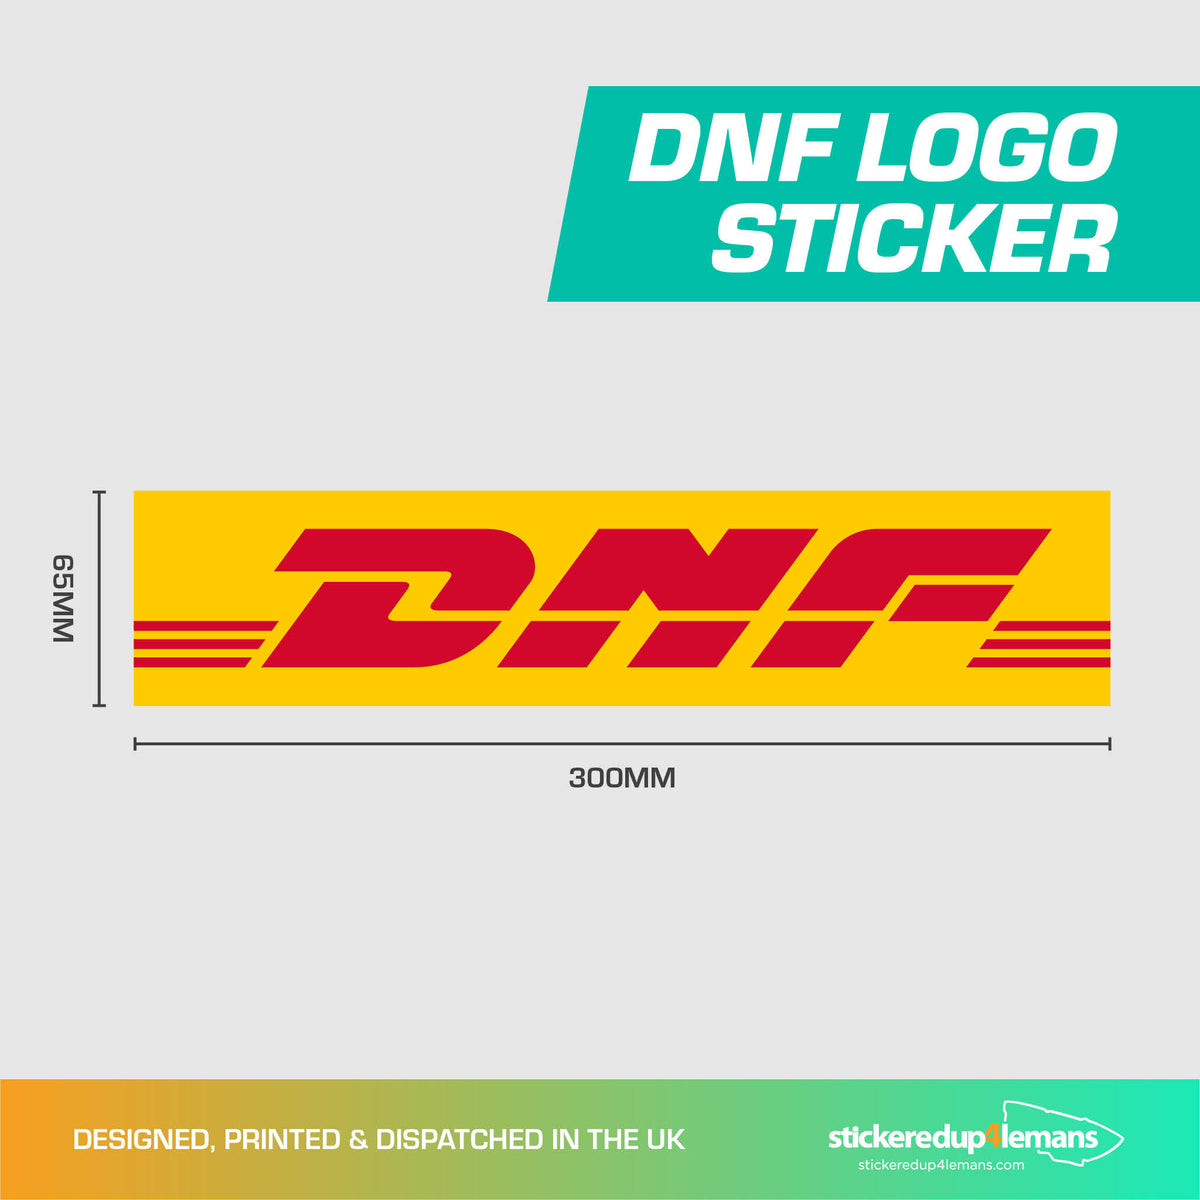 DNF Logo